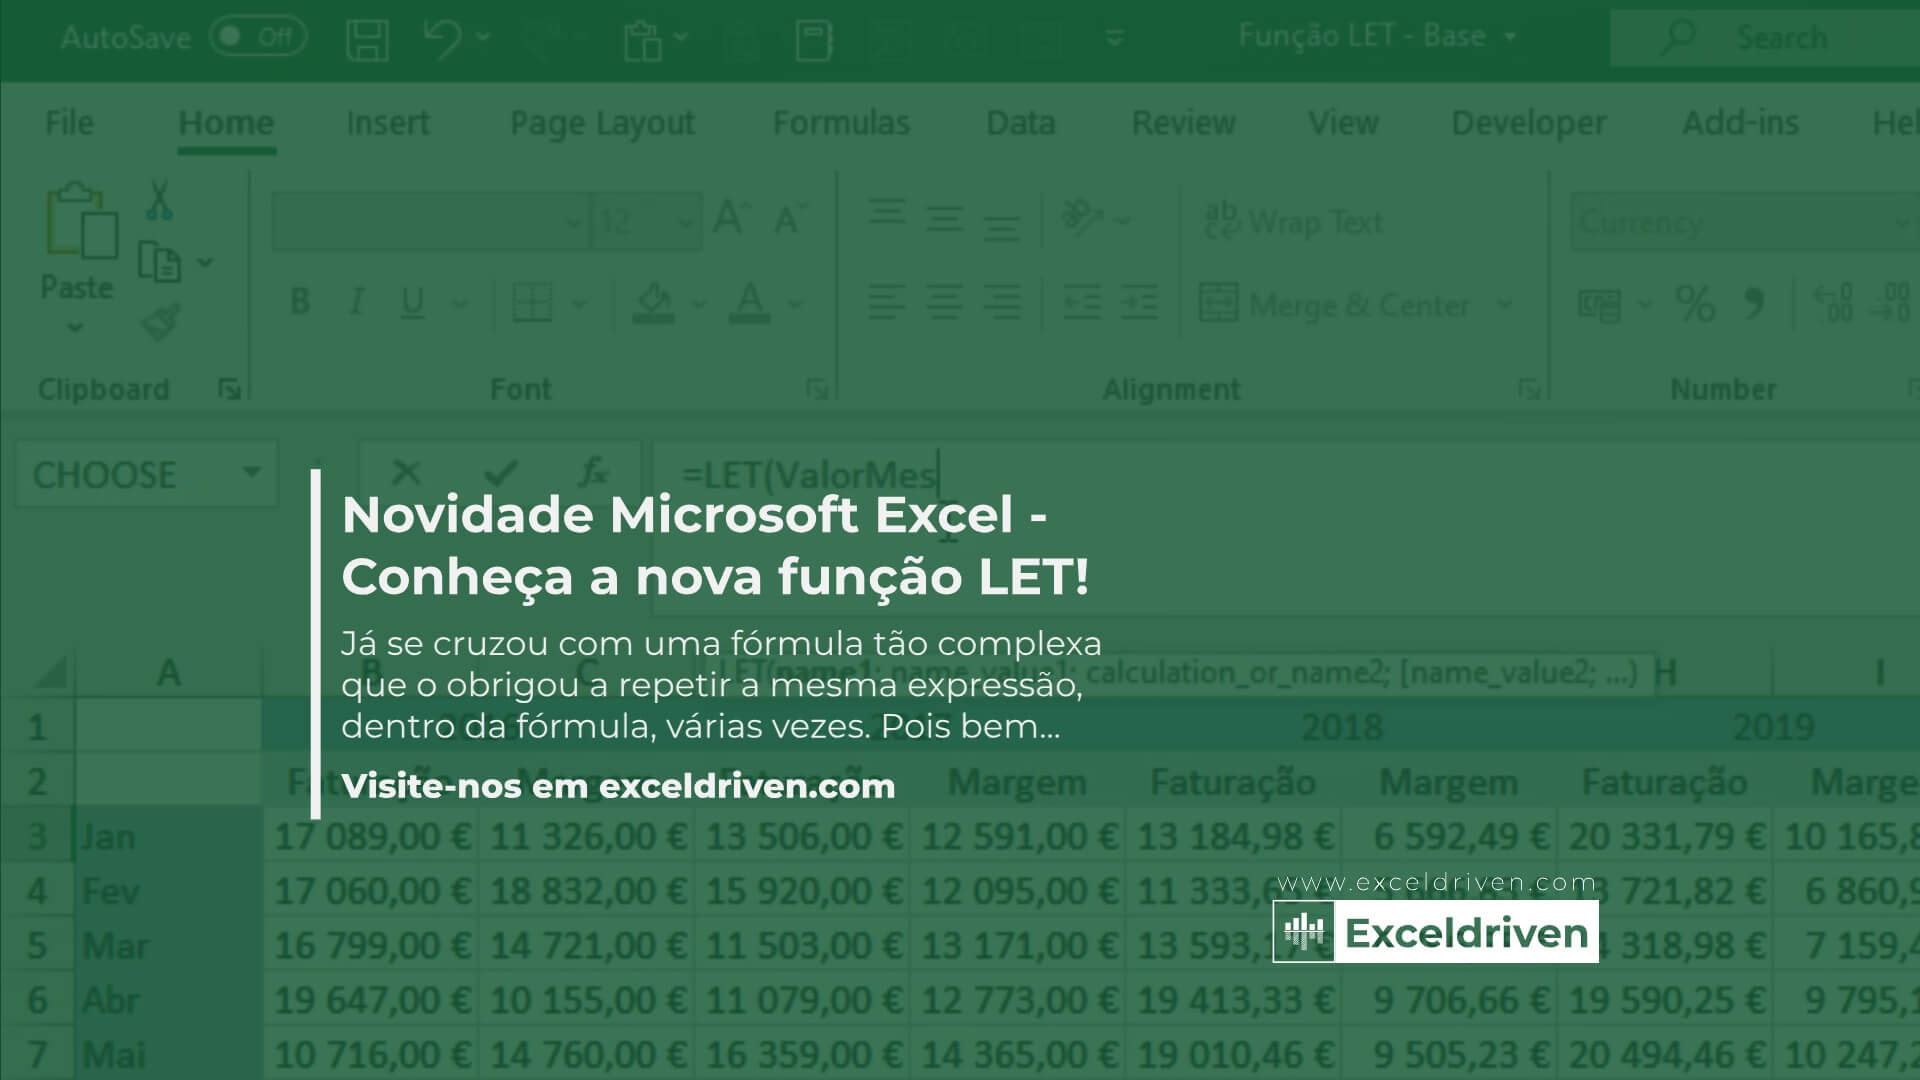 Novidade Microsoft Excel - Conheça a nova função LET!